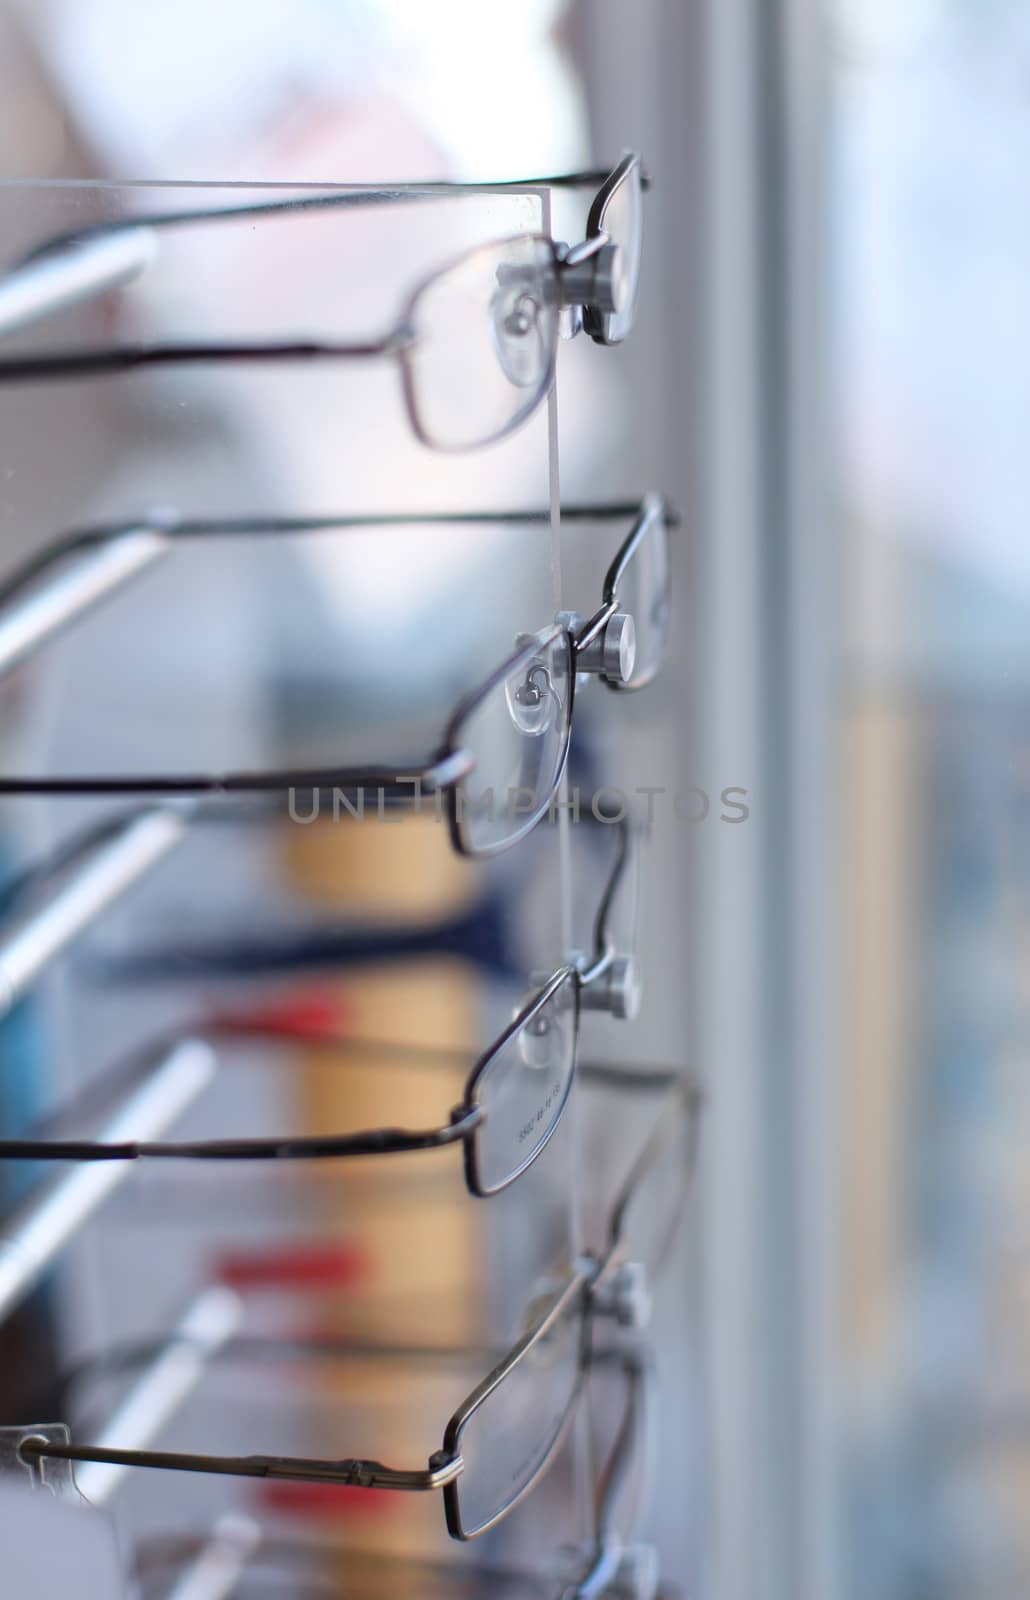 Eyeglasses in store by uros93